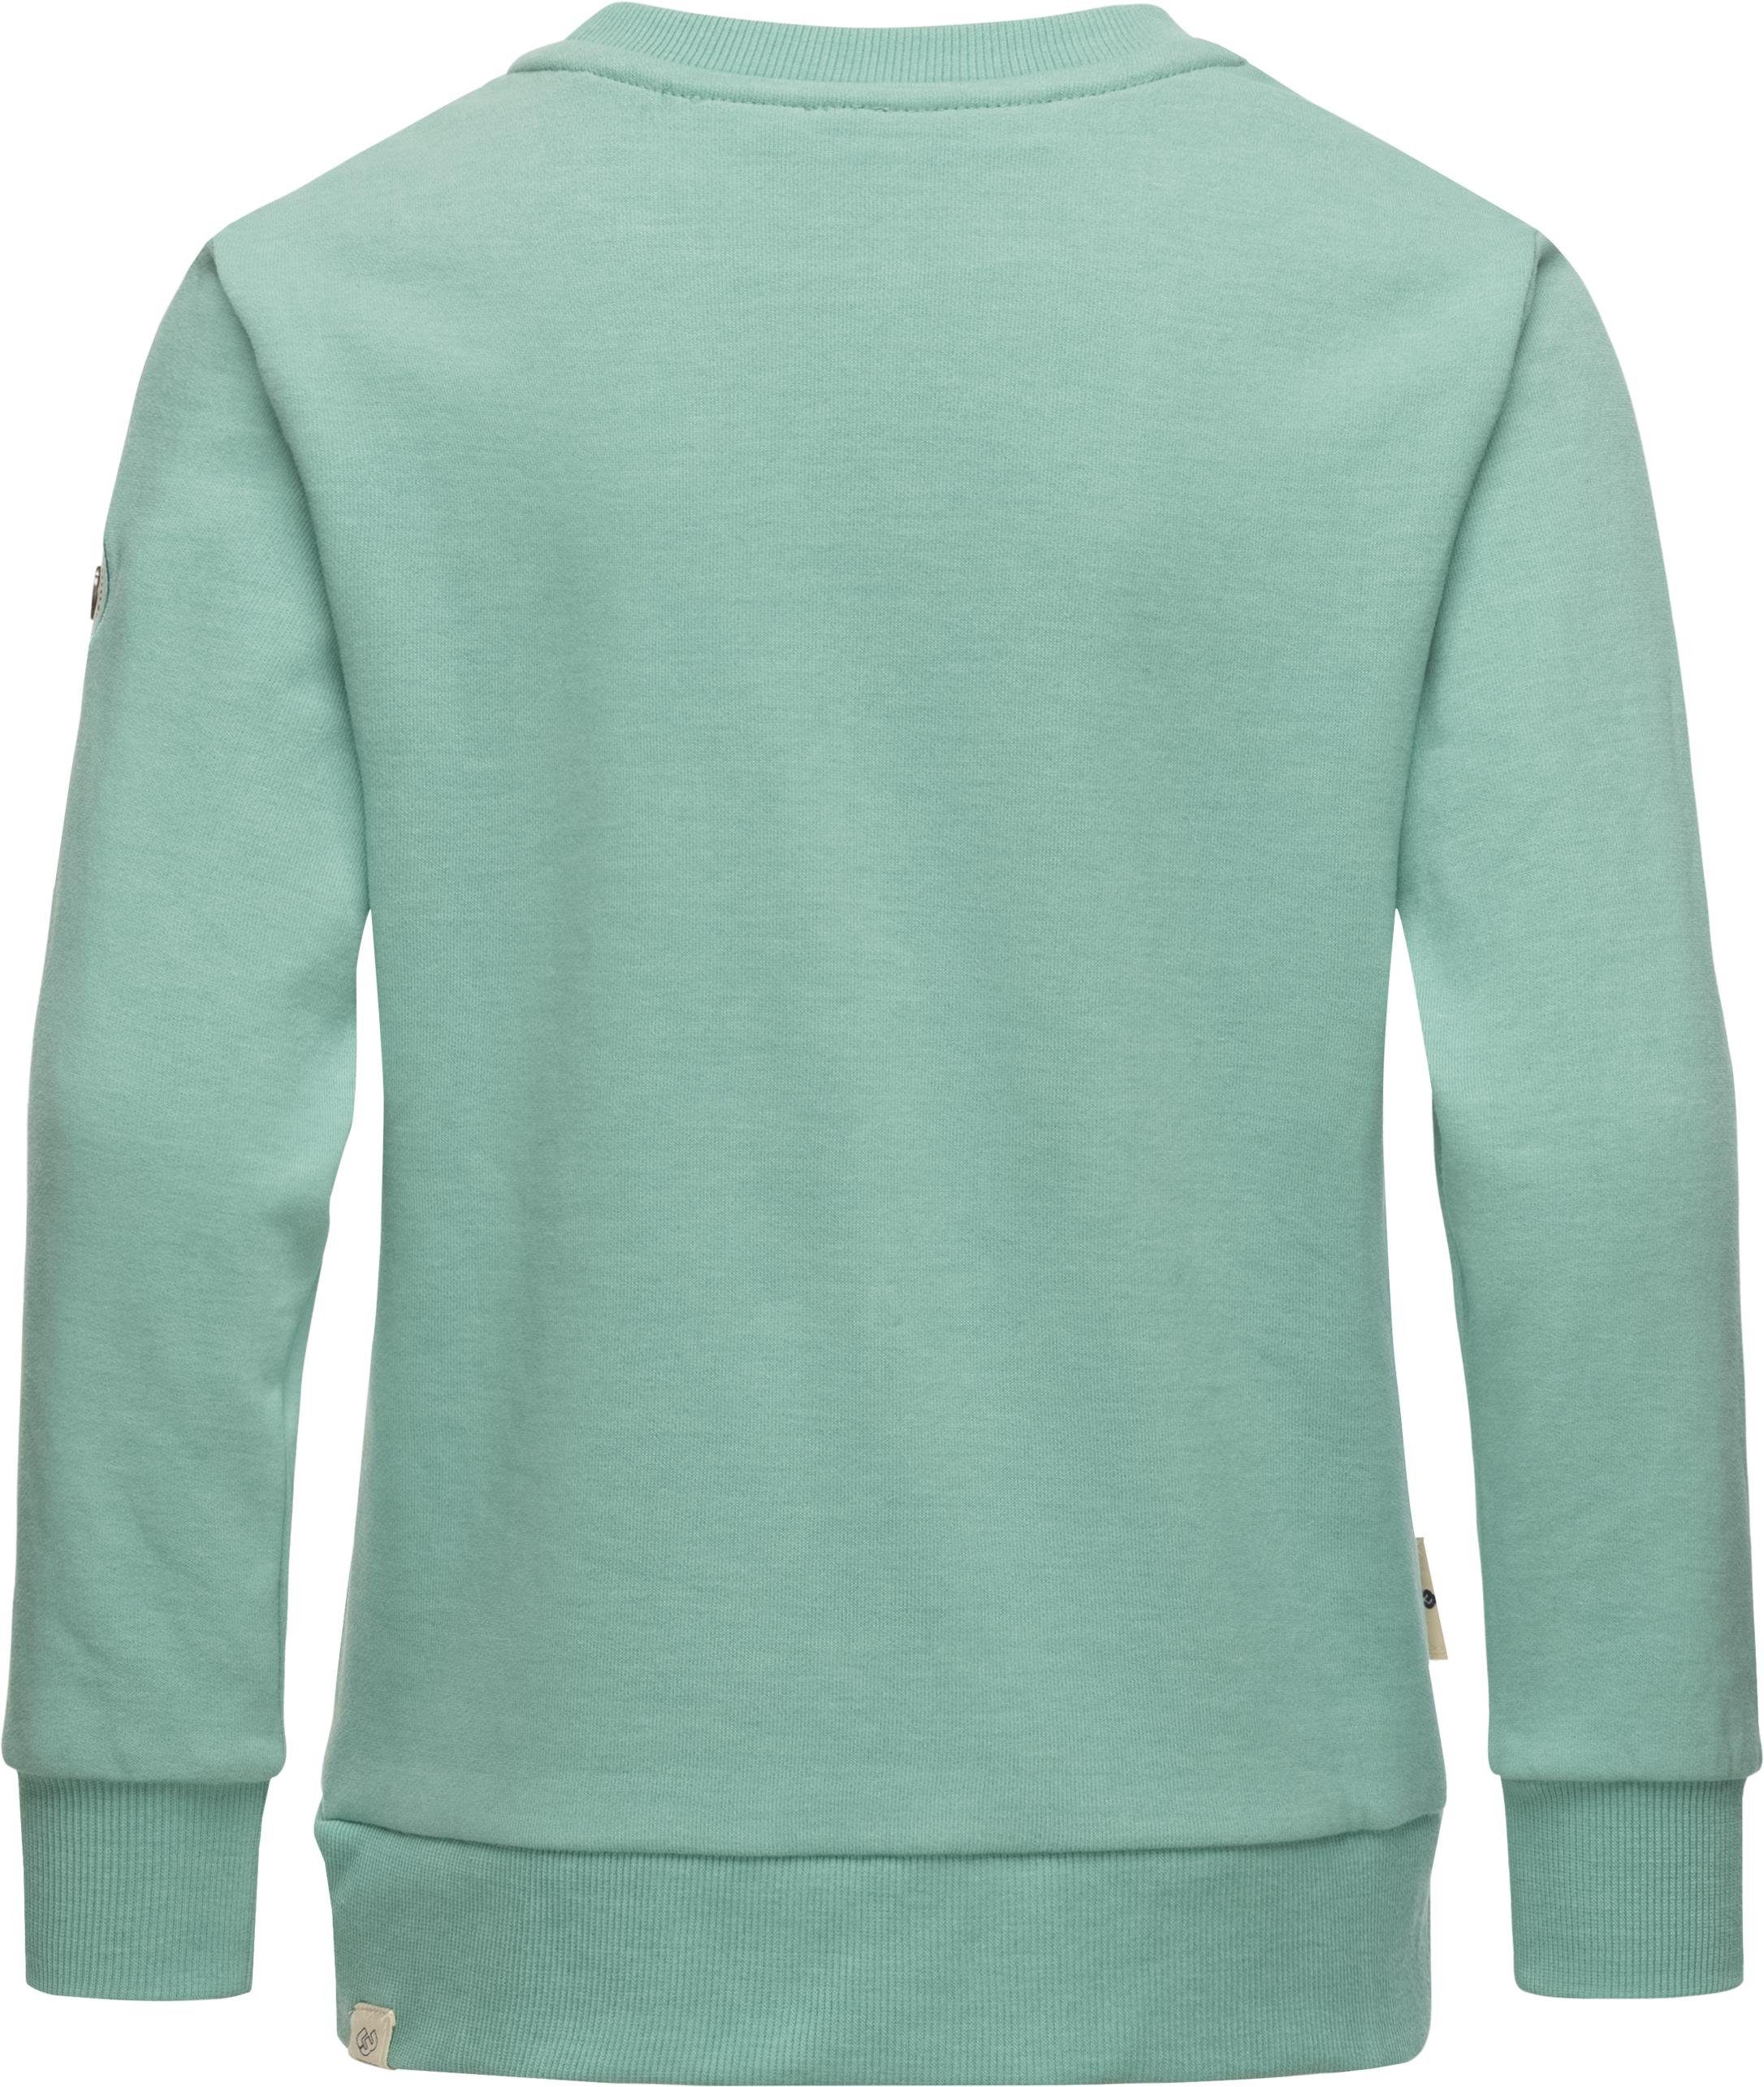 Sweater mit Evka Print stylisches blau Mädchen Ragwear Organic Sweatshirt coolem Print